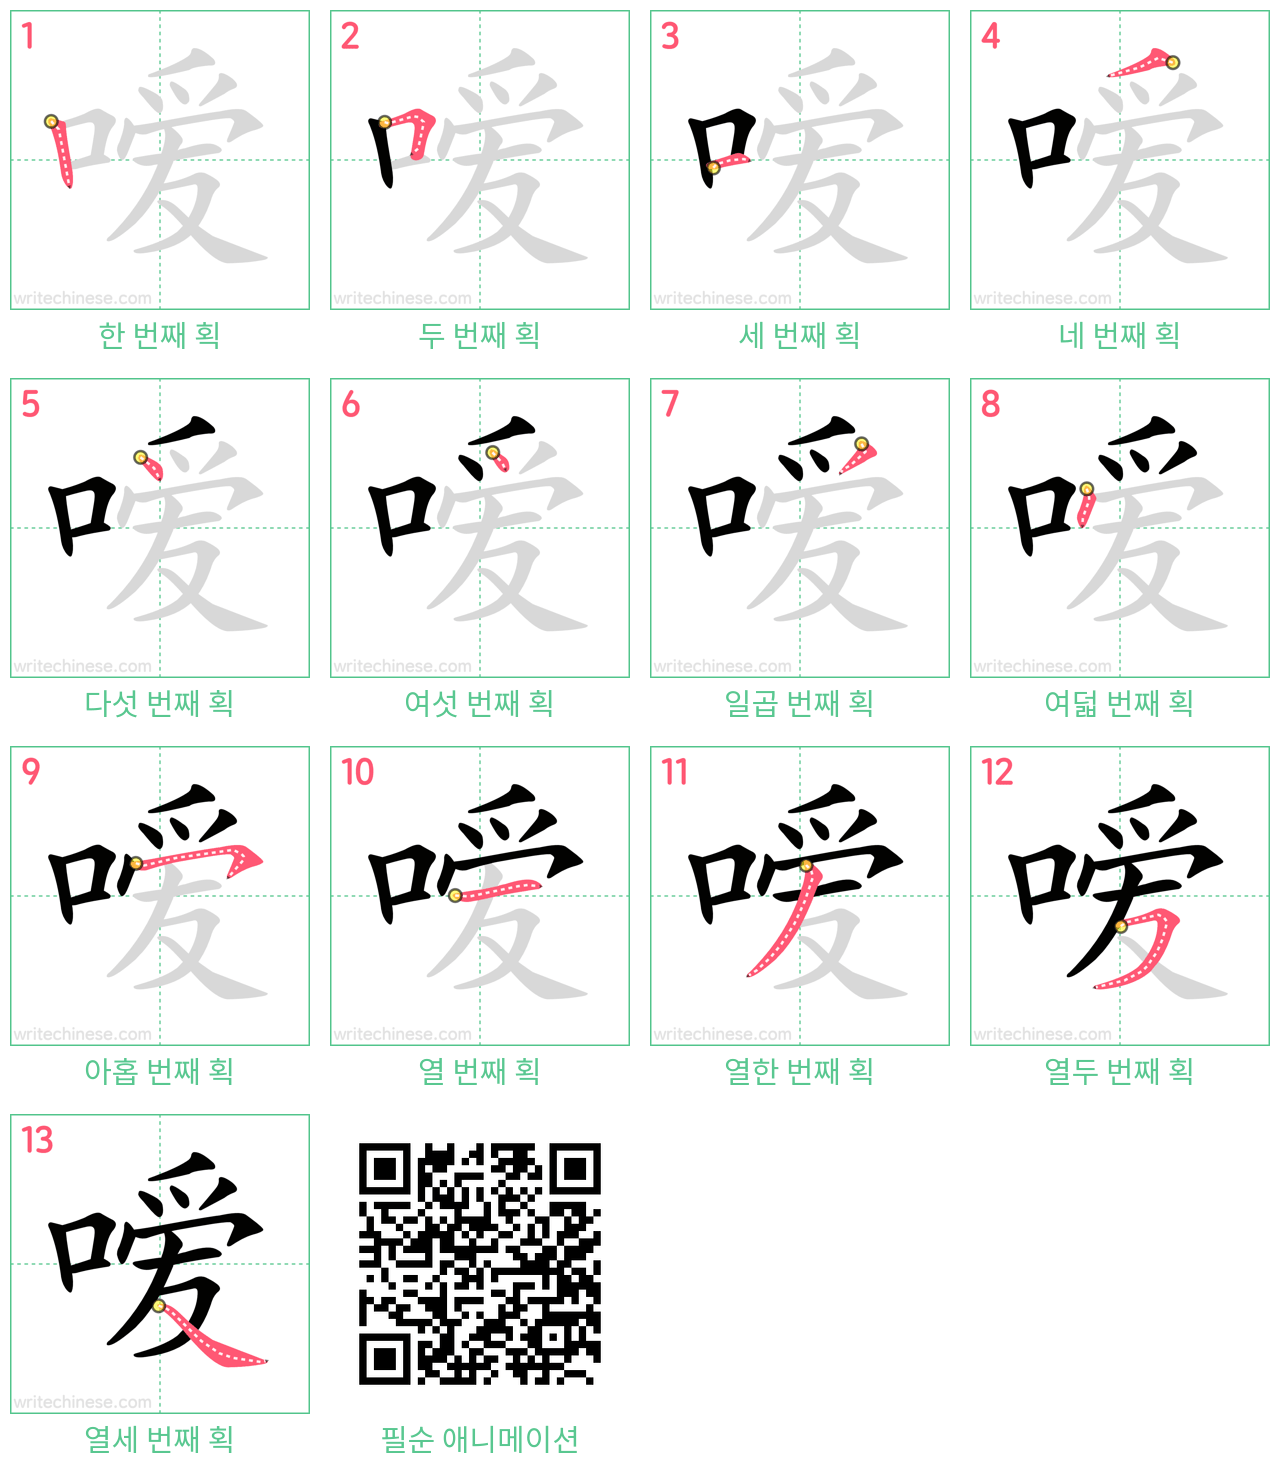 嗳 step-by-step stroke order diagrams